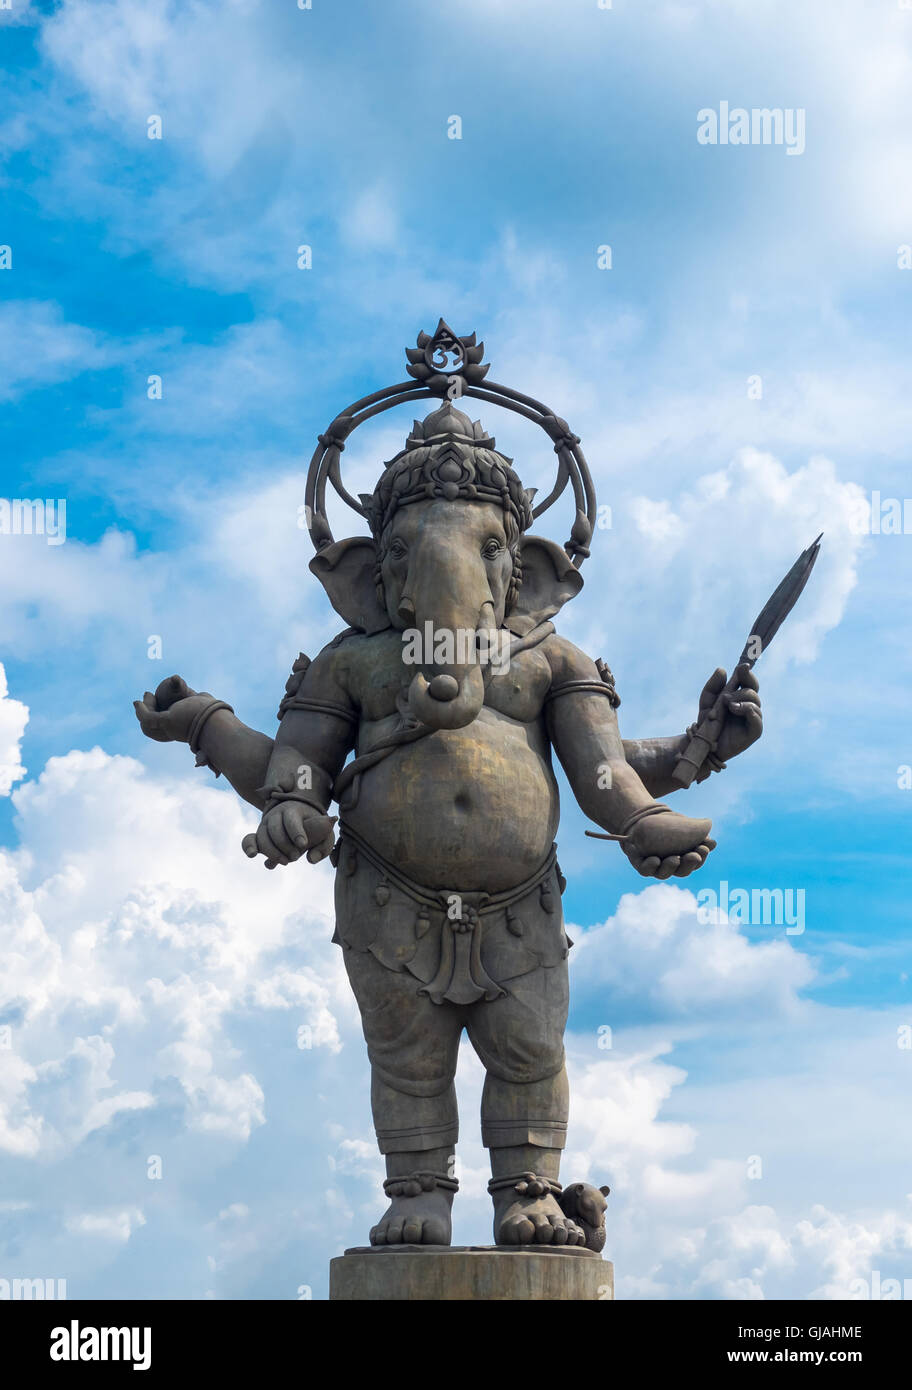 Eine große Statue des Gottes Ganesha in Chachoengsao, Thailand, Lord Ganesha ist Gott in der hinduistischen Religion. Stockfoto